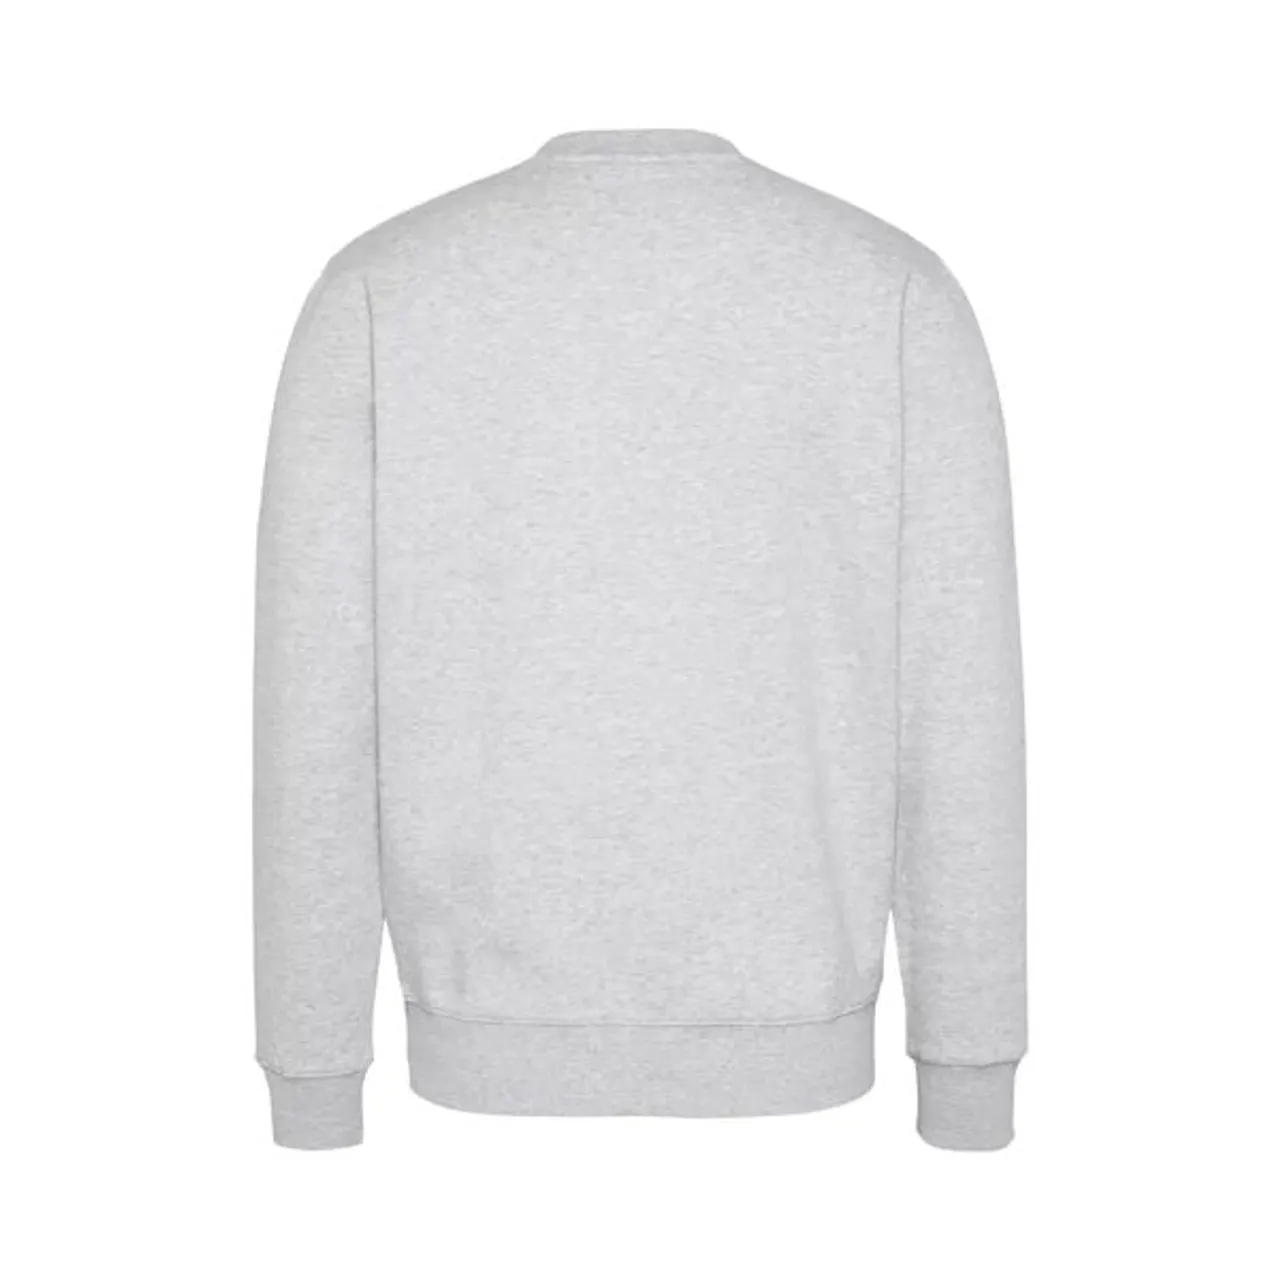 Tommy Hilfiger Tommy Jeans Fleece Crew Neck Sweatshirt - Light Grey Heather - Male